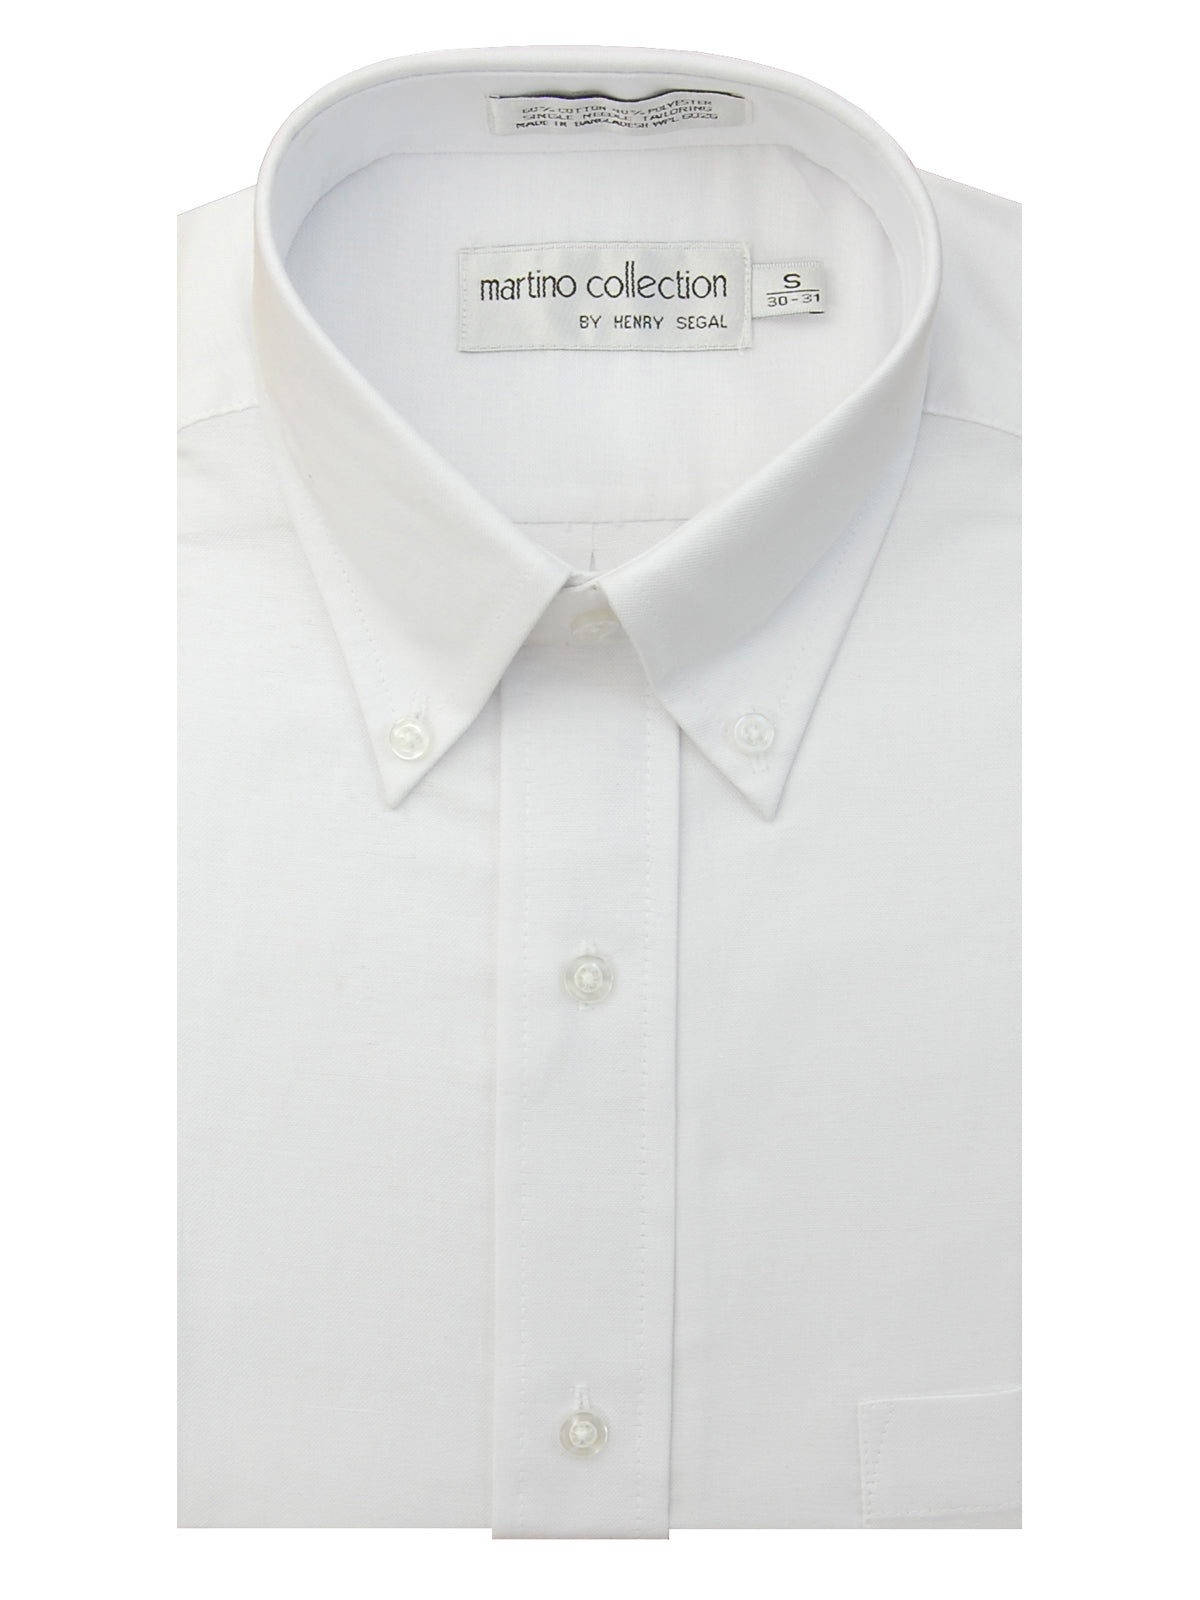 Henry Segal Mens Dress Shirt White - 1801